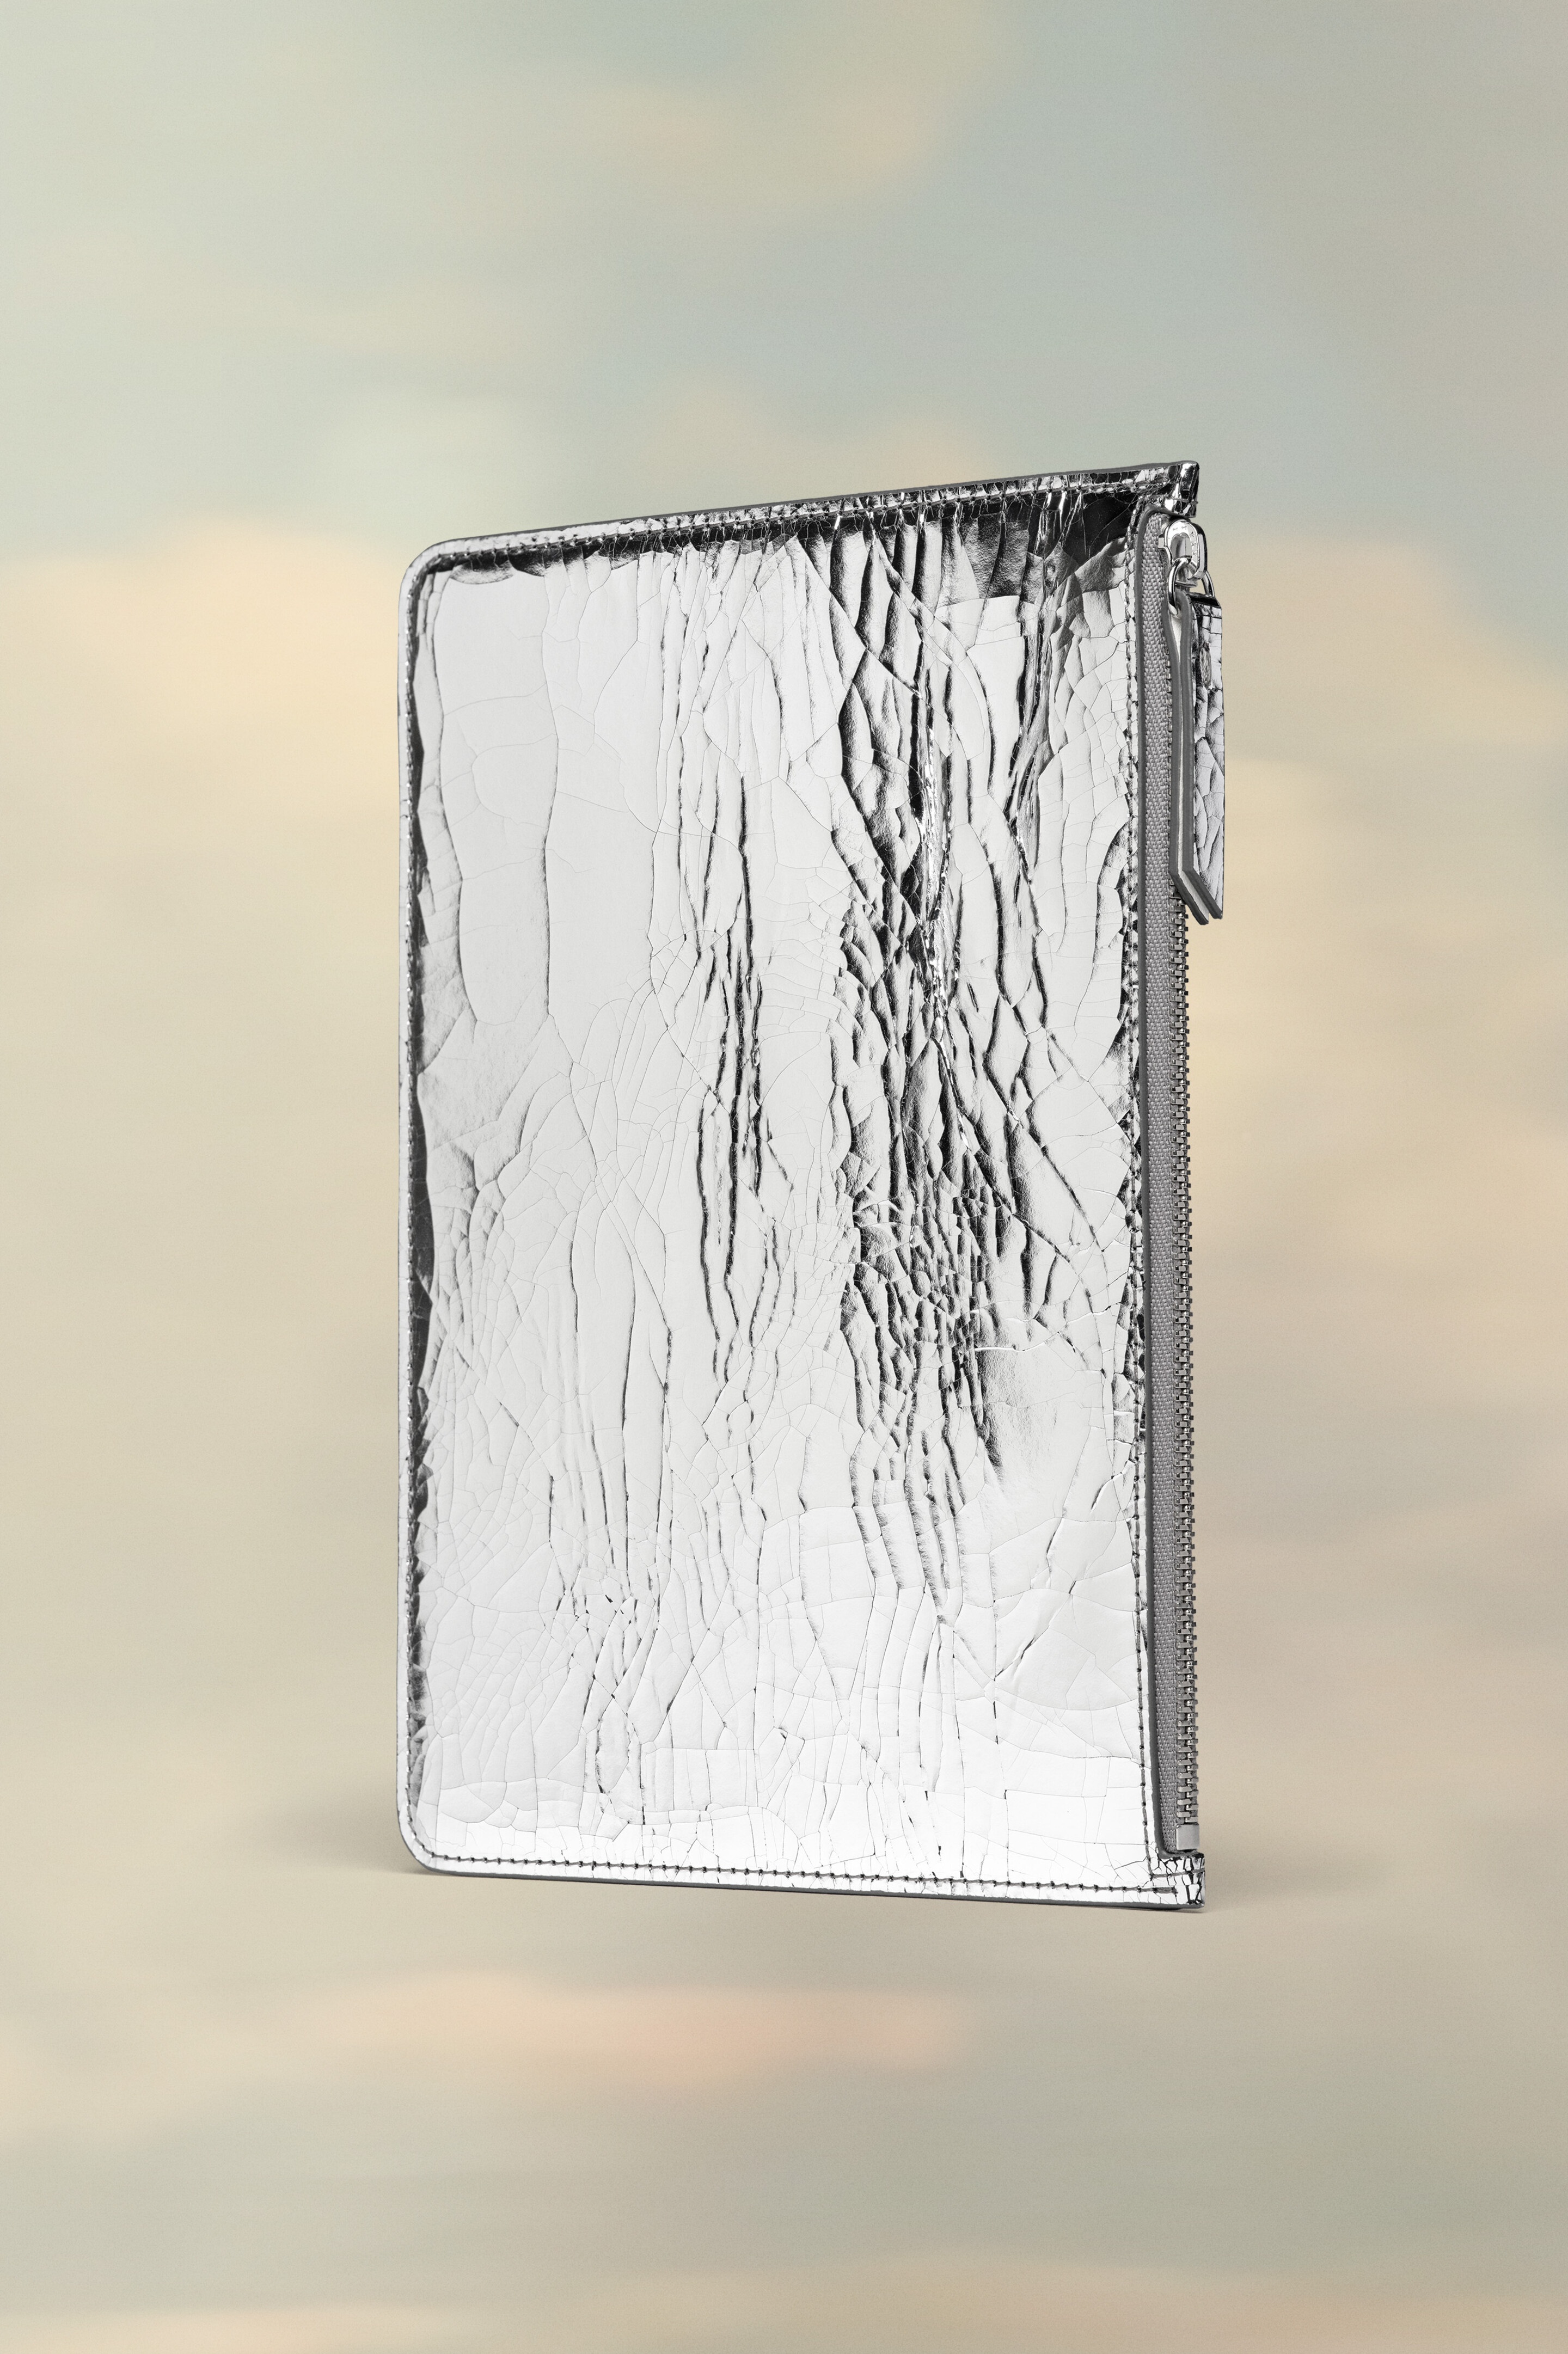 Broken mirror pouch - 1